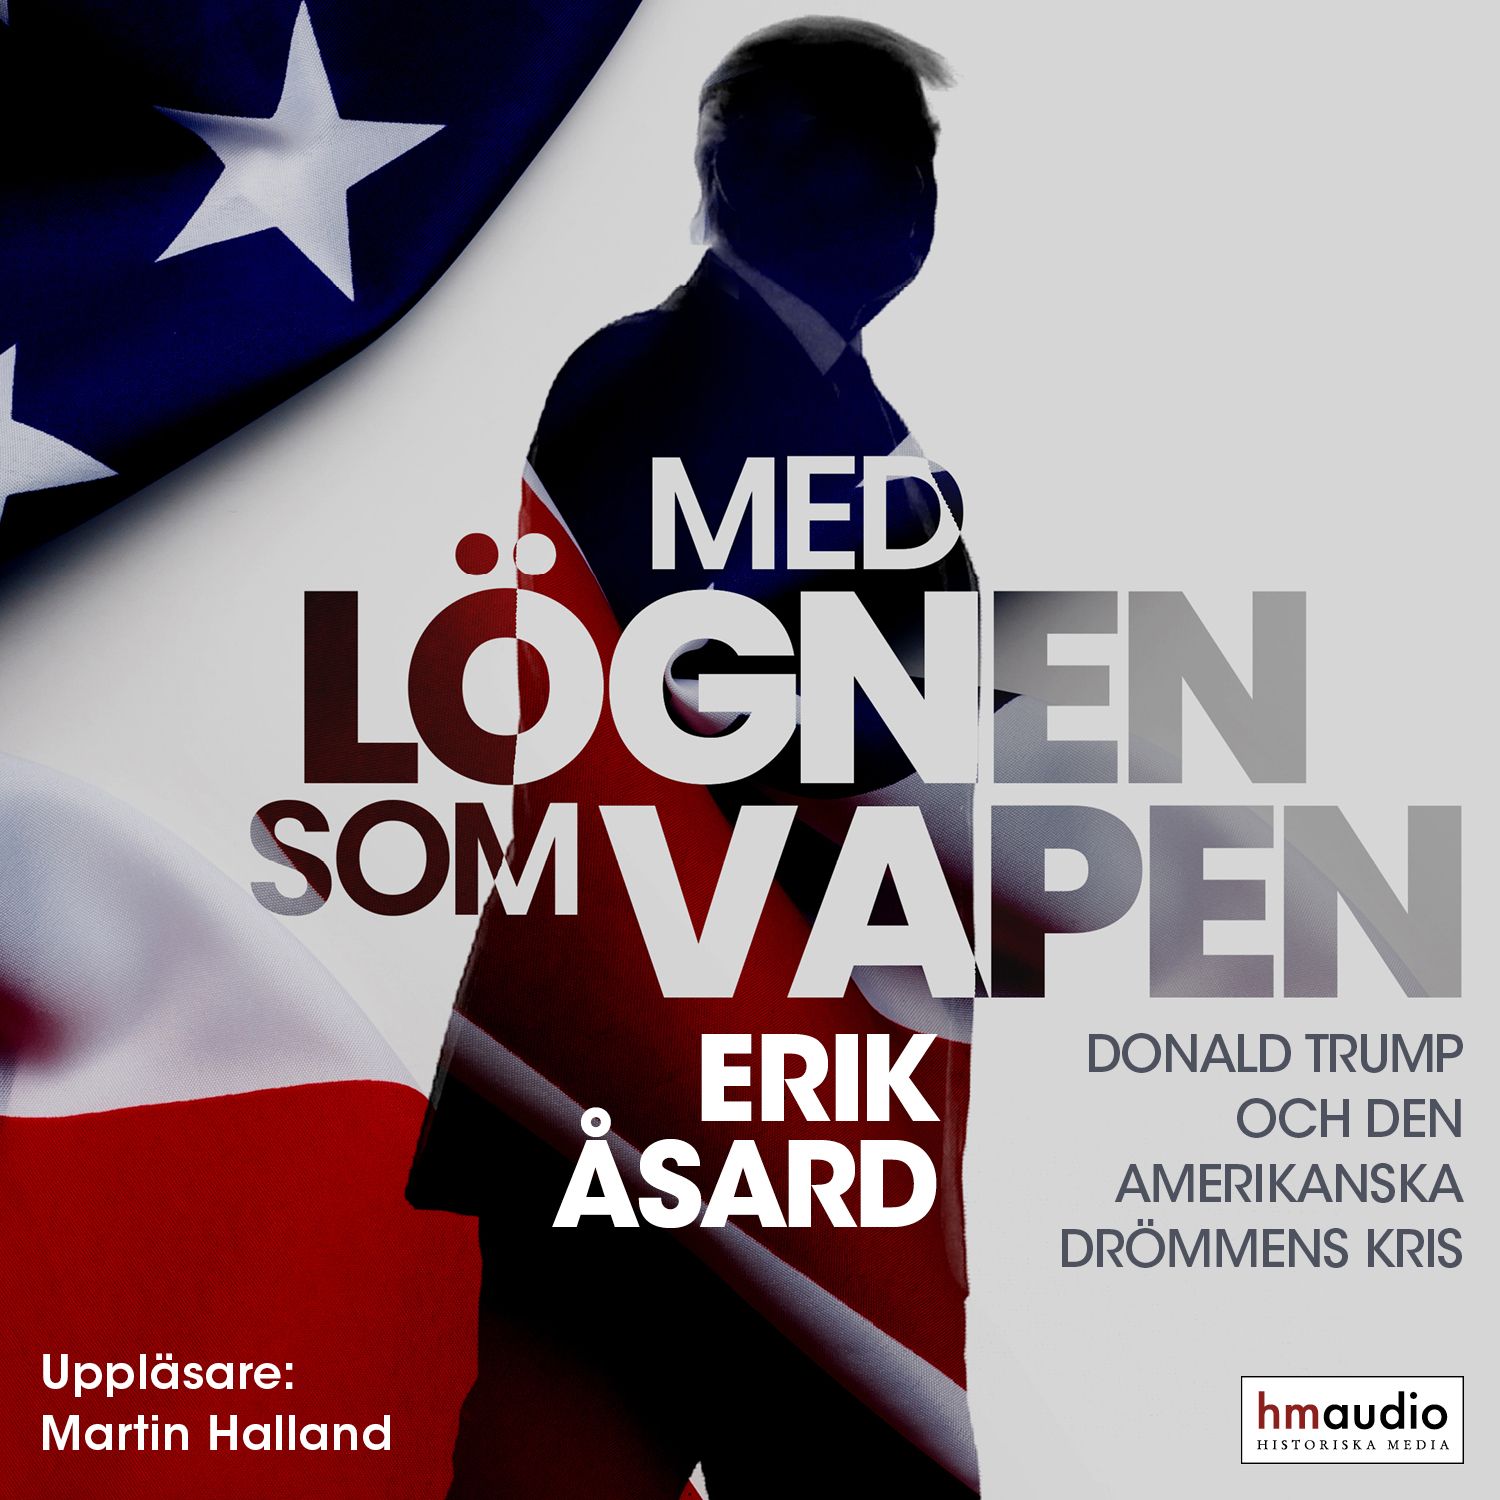 Med lögnen som vapen, audiobook by Erik Åsard